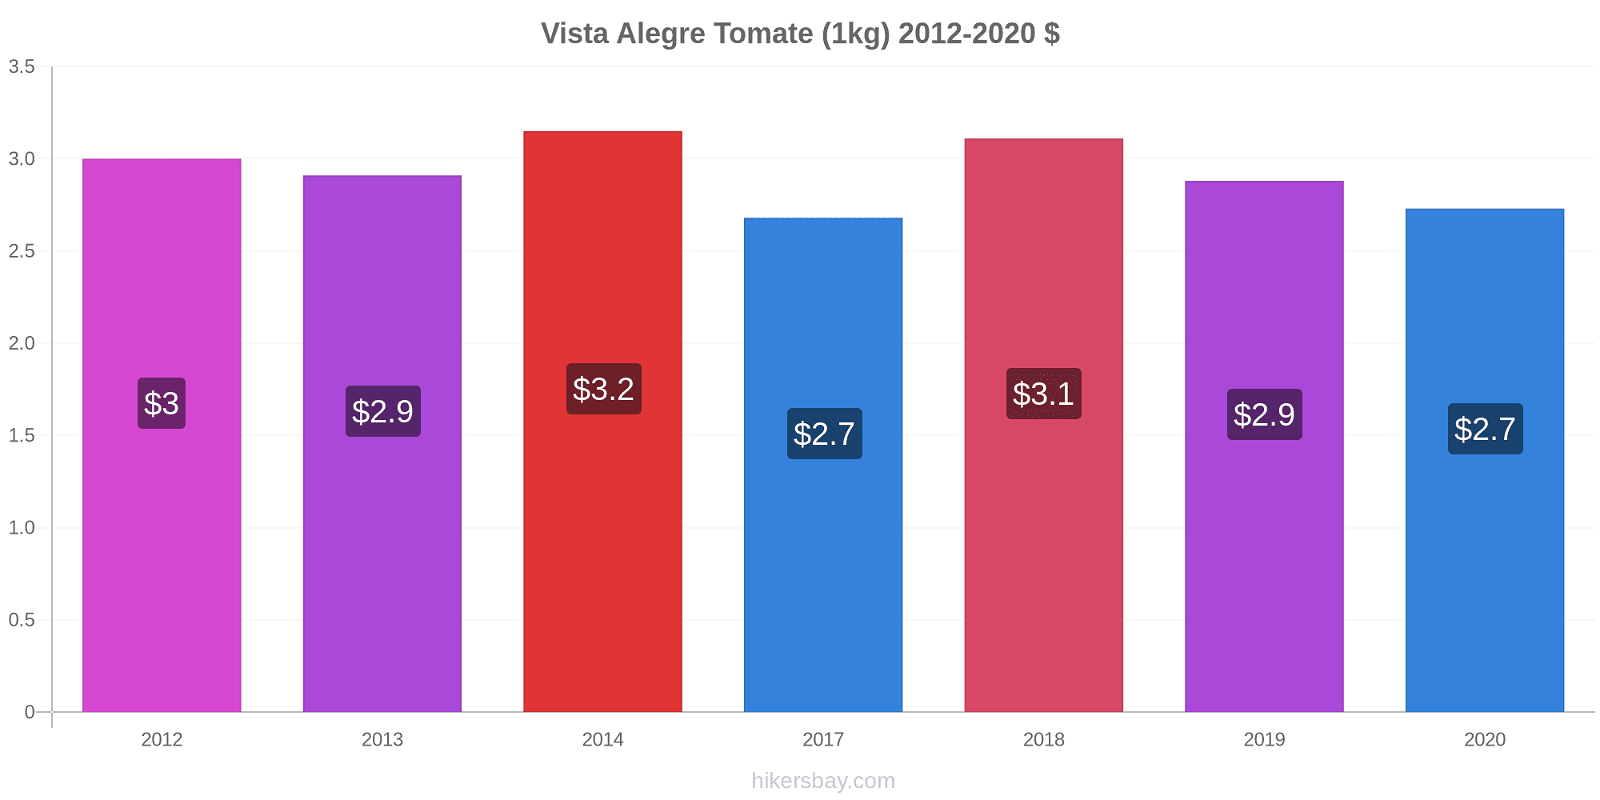 Vista Alegre changements de prix Tomate (1kg) hikersbay.com